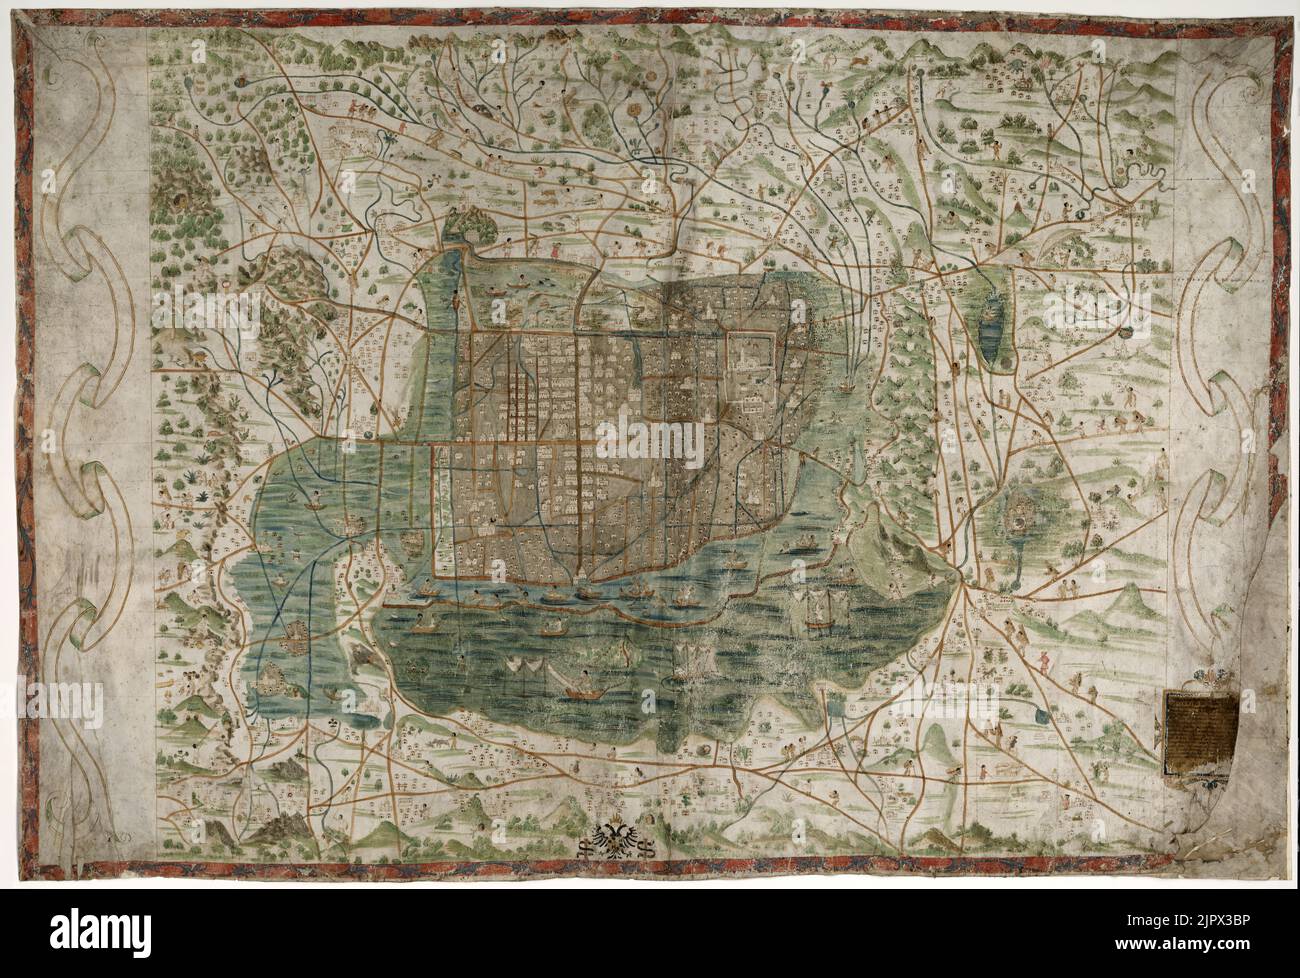 Carte topographique antique et picturale de Mexico et des environs en 1521 Banque D'Images